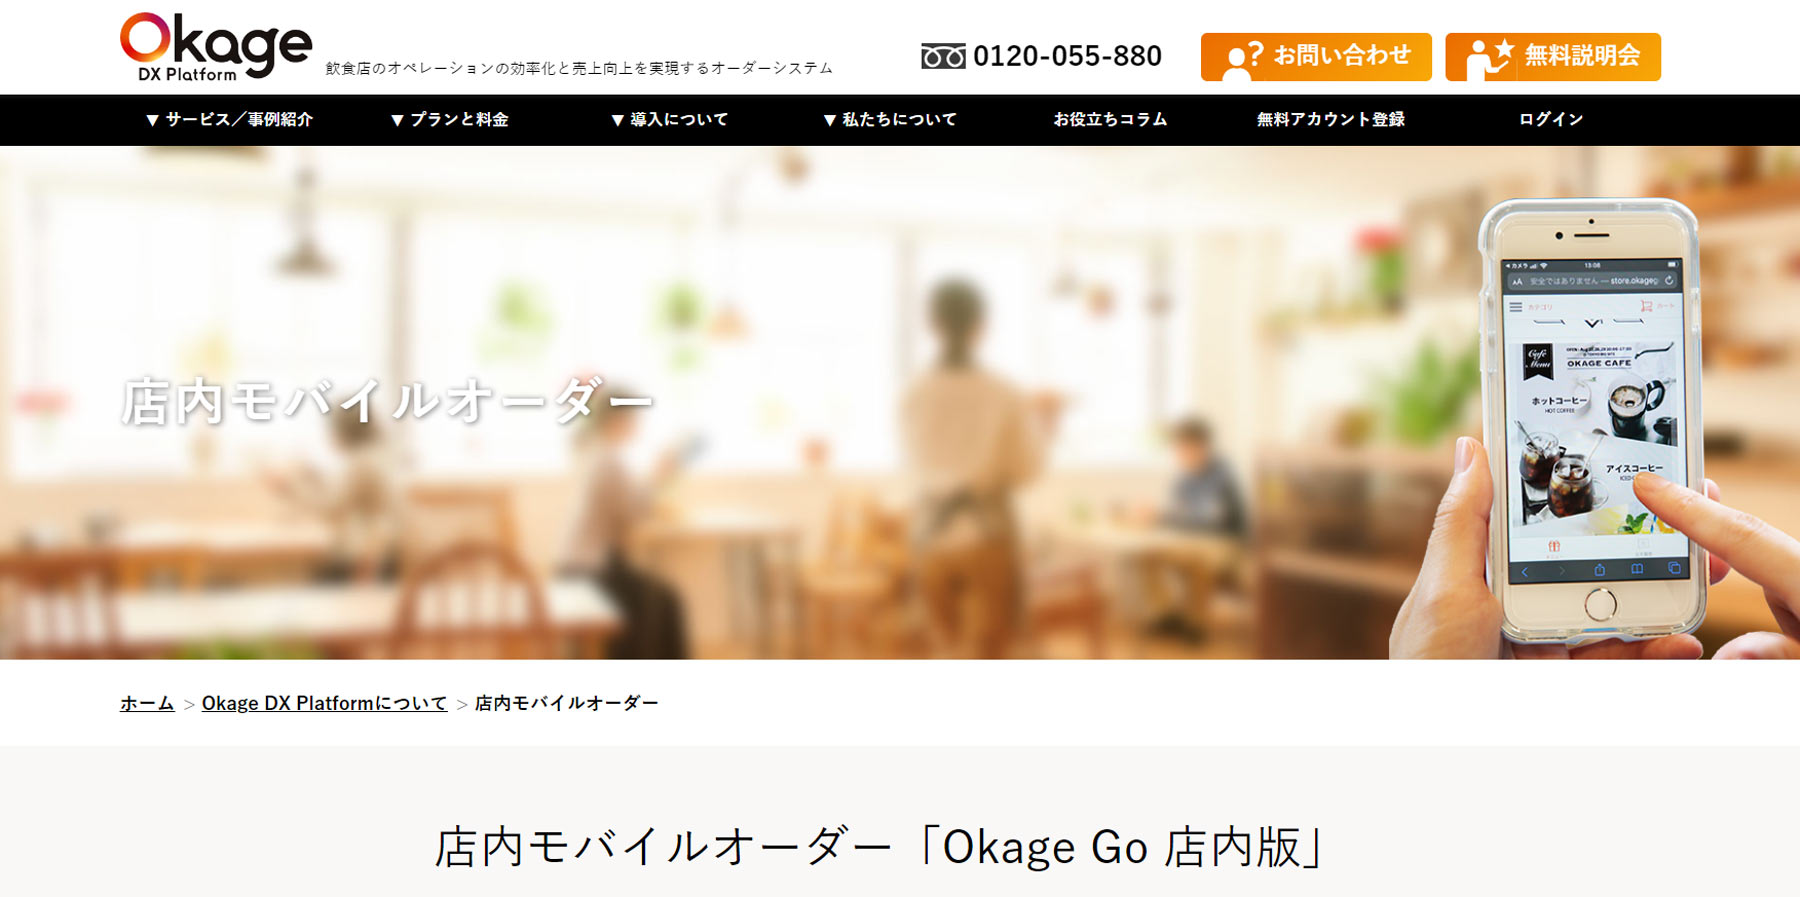 Okage Go 店内版公式Webサイト